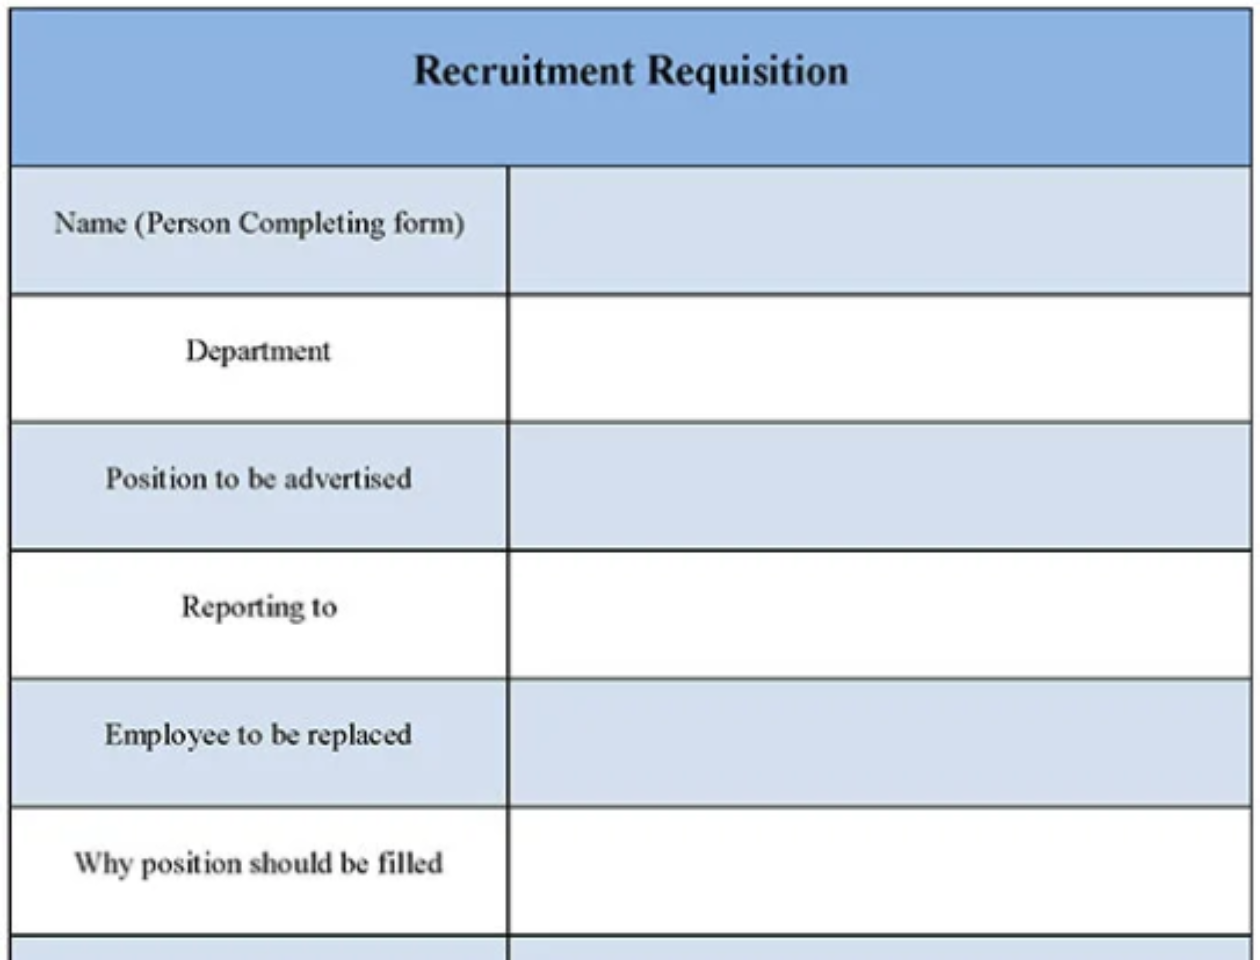 Recruitment Requisition Form